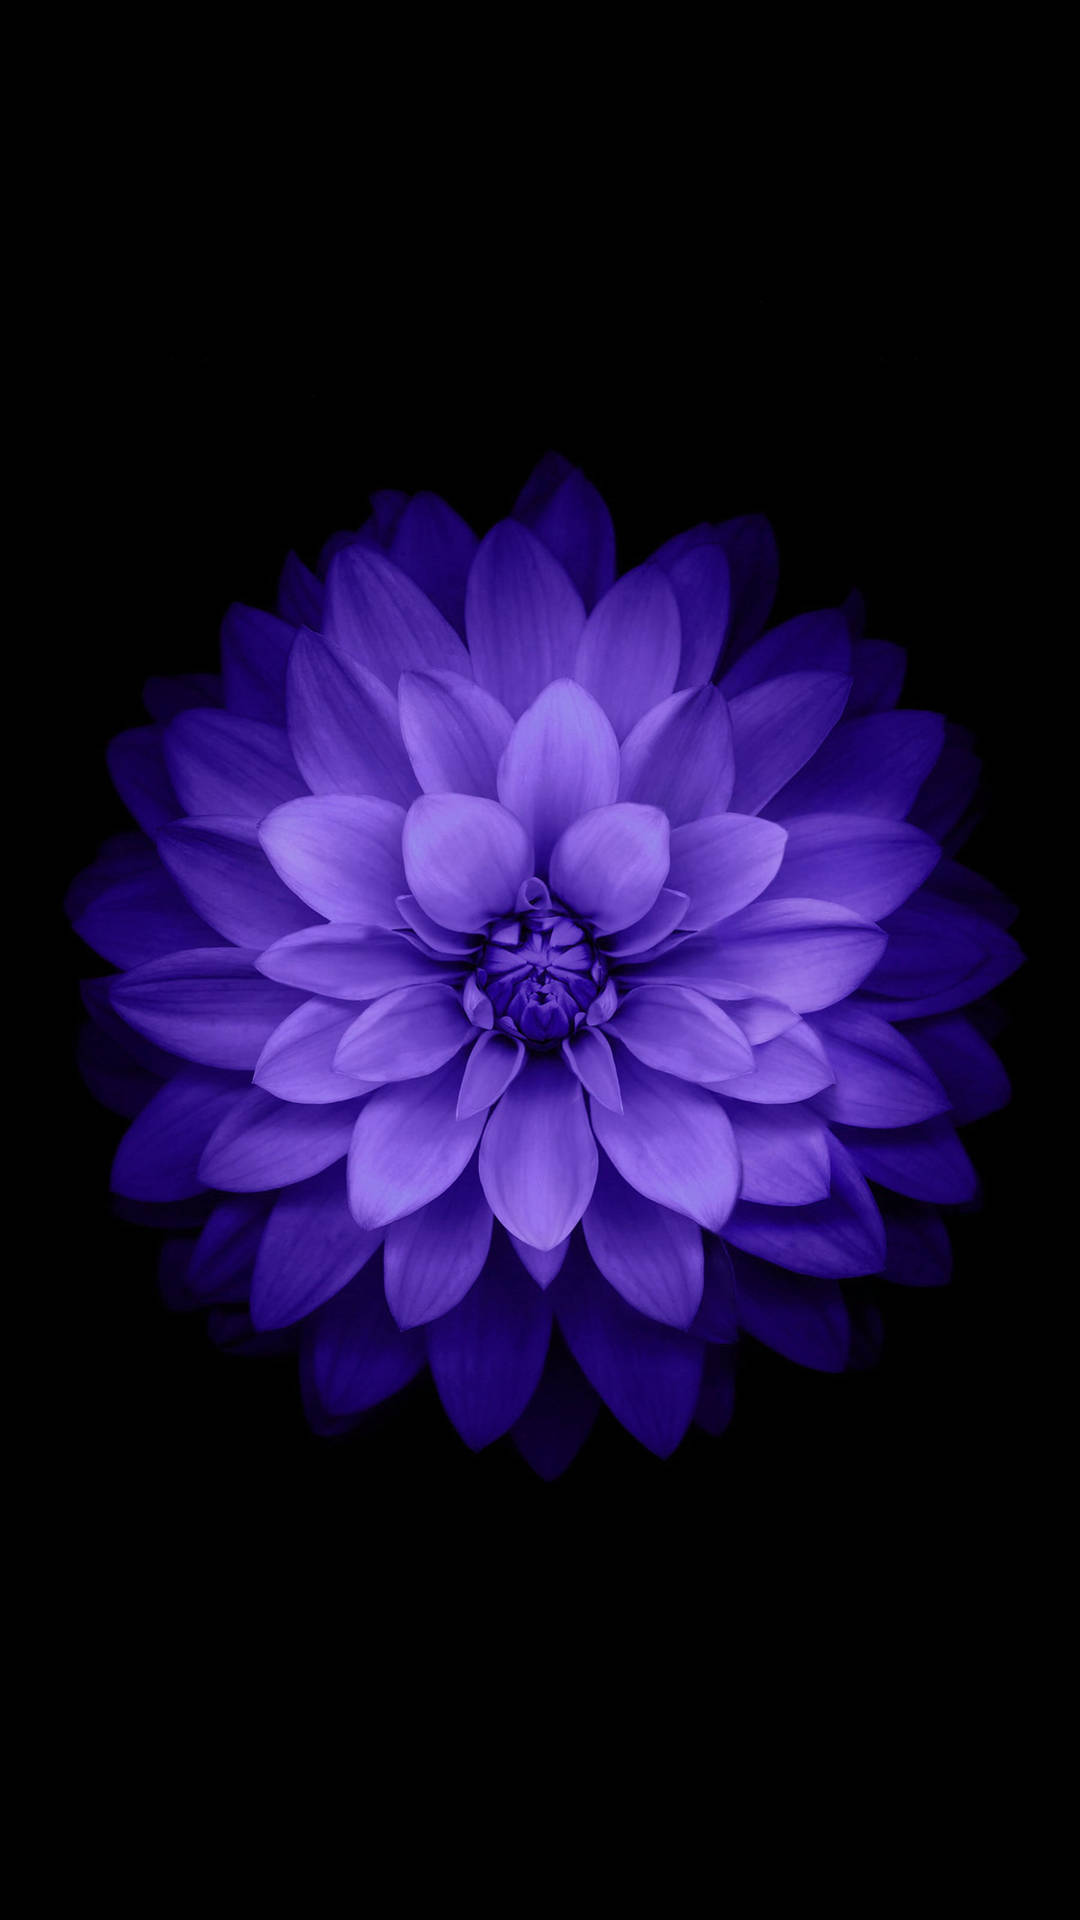 Aesthetic Purple Dahlia Flower Mobile Wallpaper